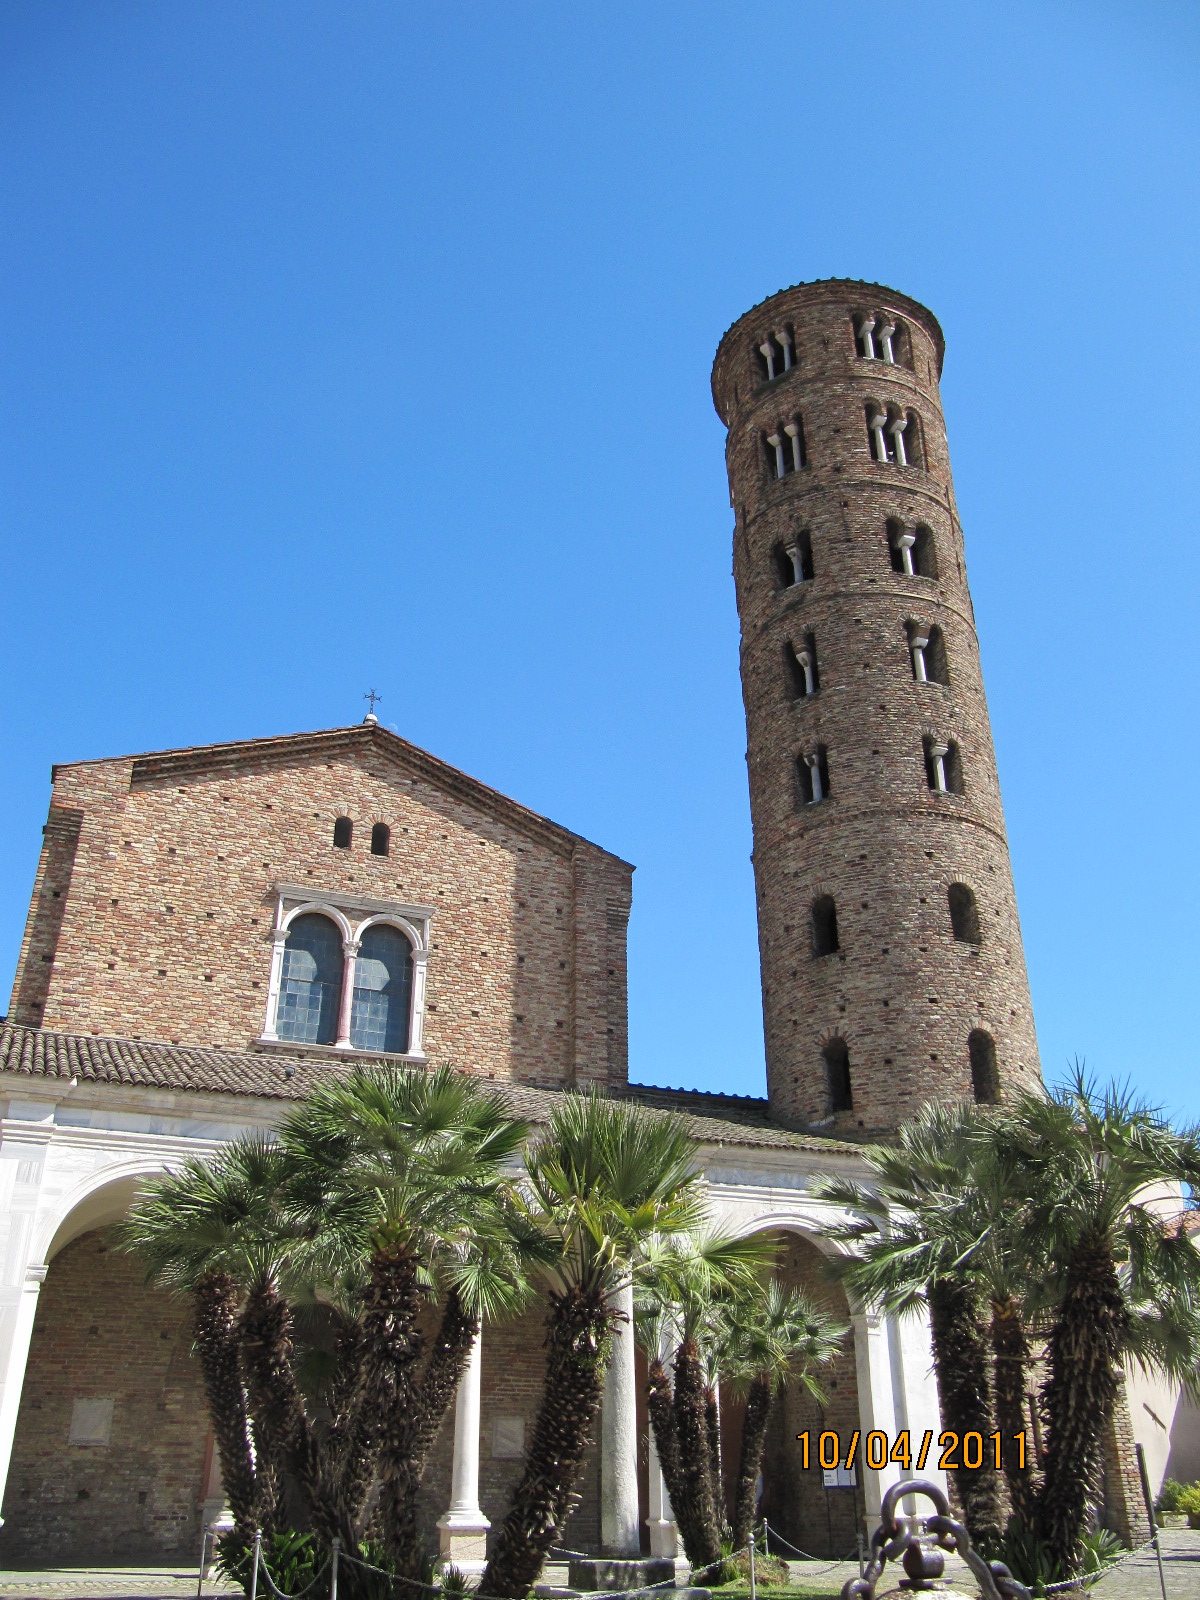 photo: https://upload.wikimedia.org/wikipedia/commons/9/90/Basilica_Sant%27Apollinare_Nuovo_-_esterno.jpg